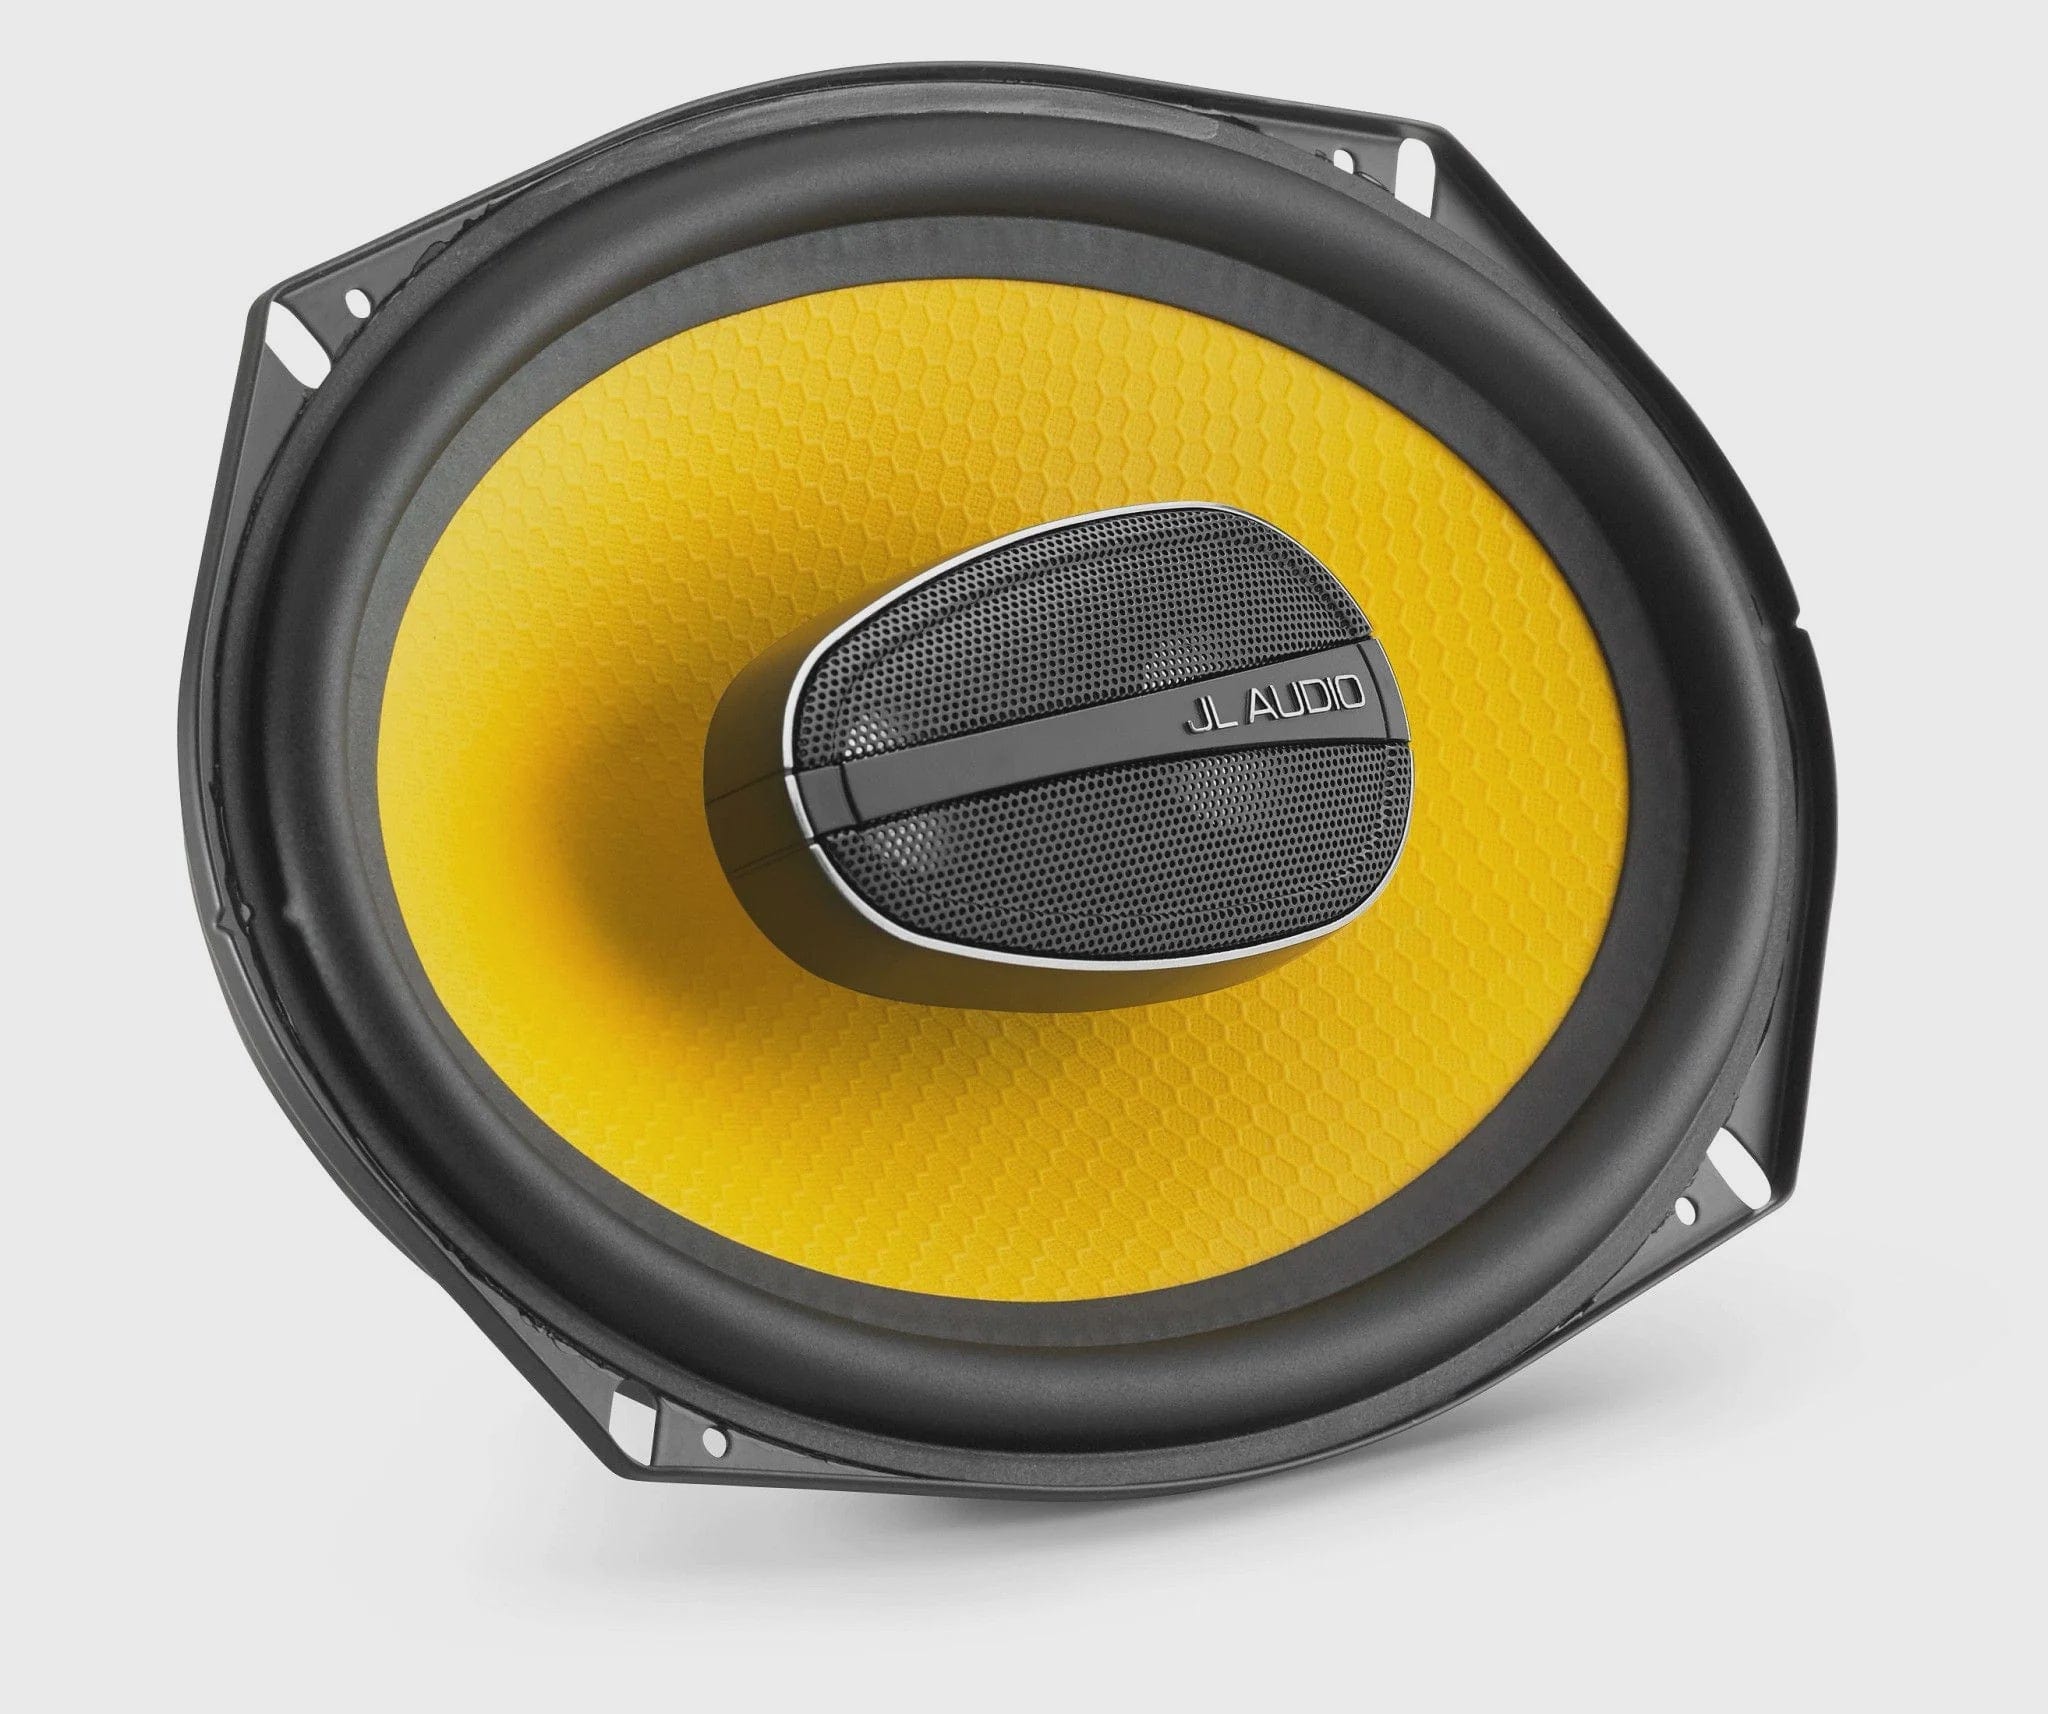 JL AUDIO Coaxial C1 6x9 3 Way Coaxial Speakers